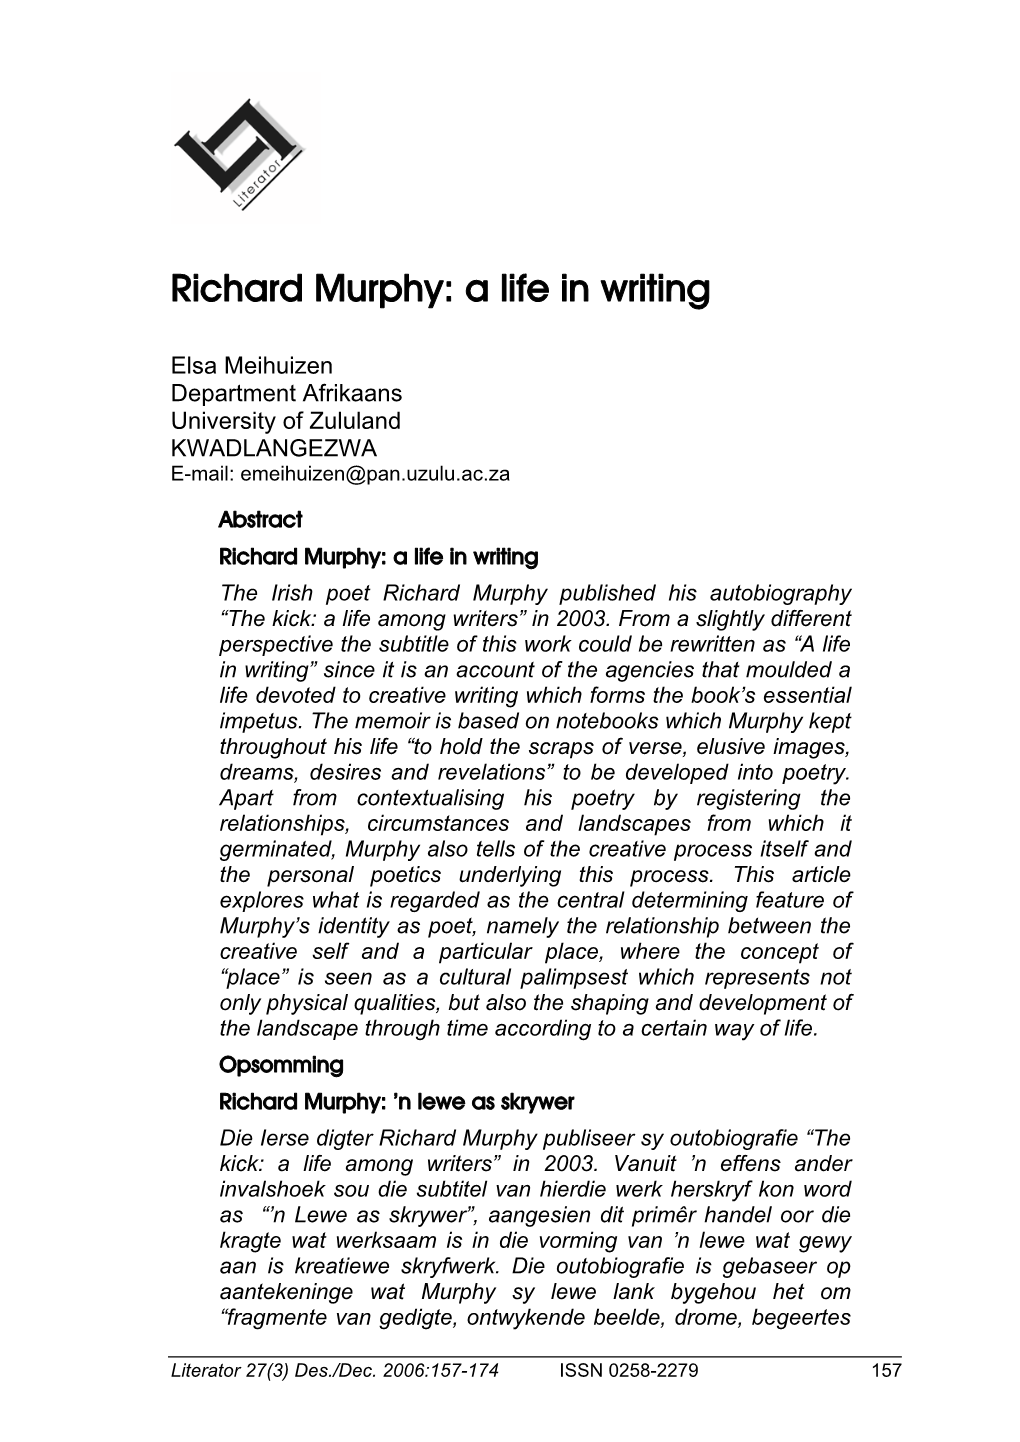 Richard Murphy: a Life in Writing